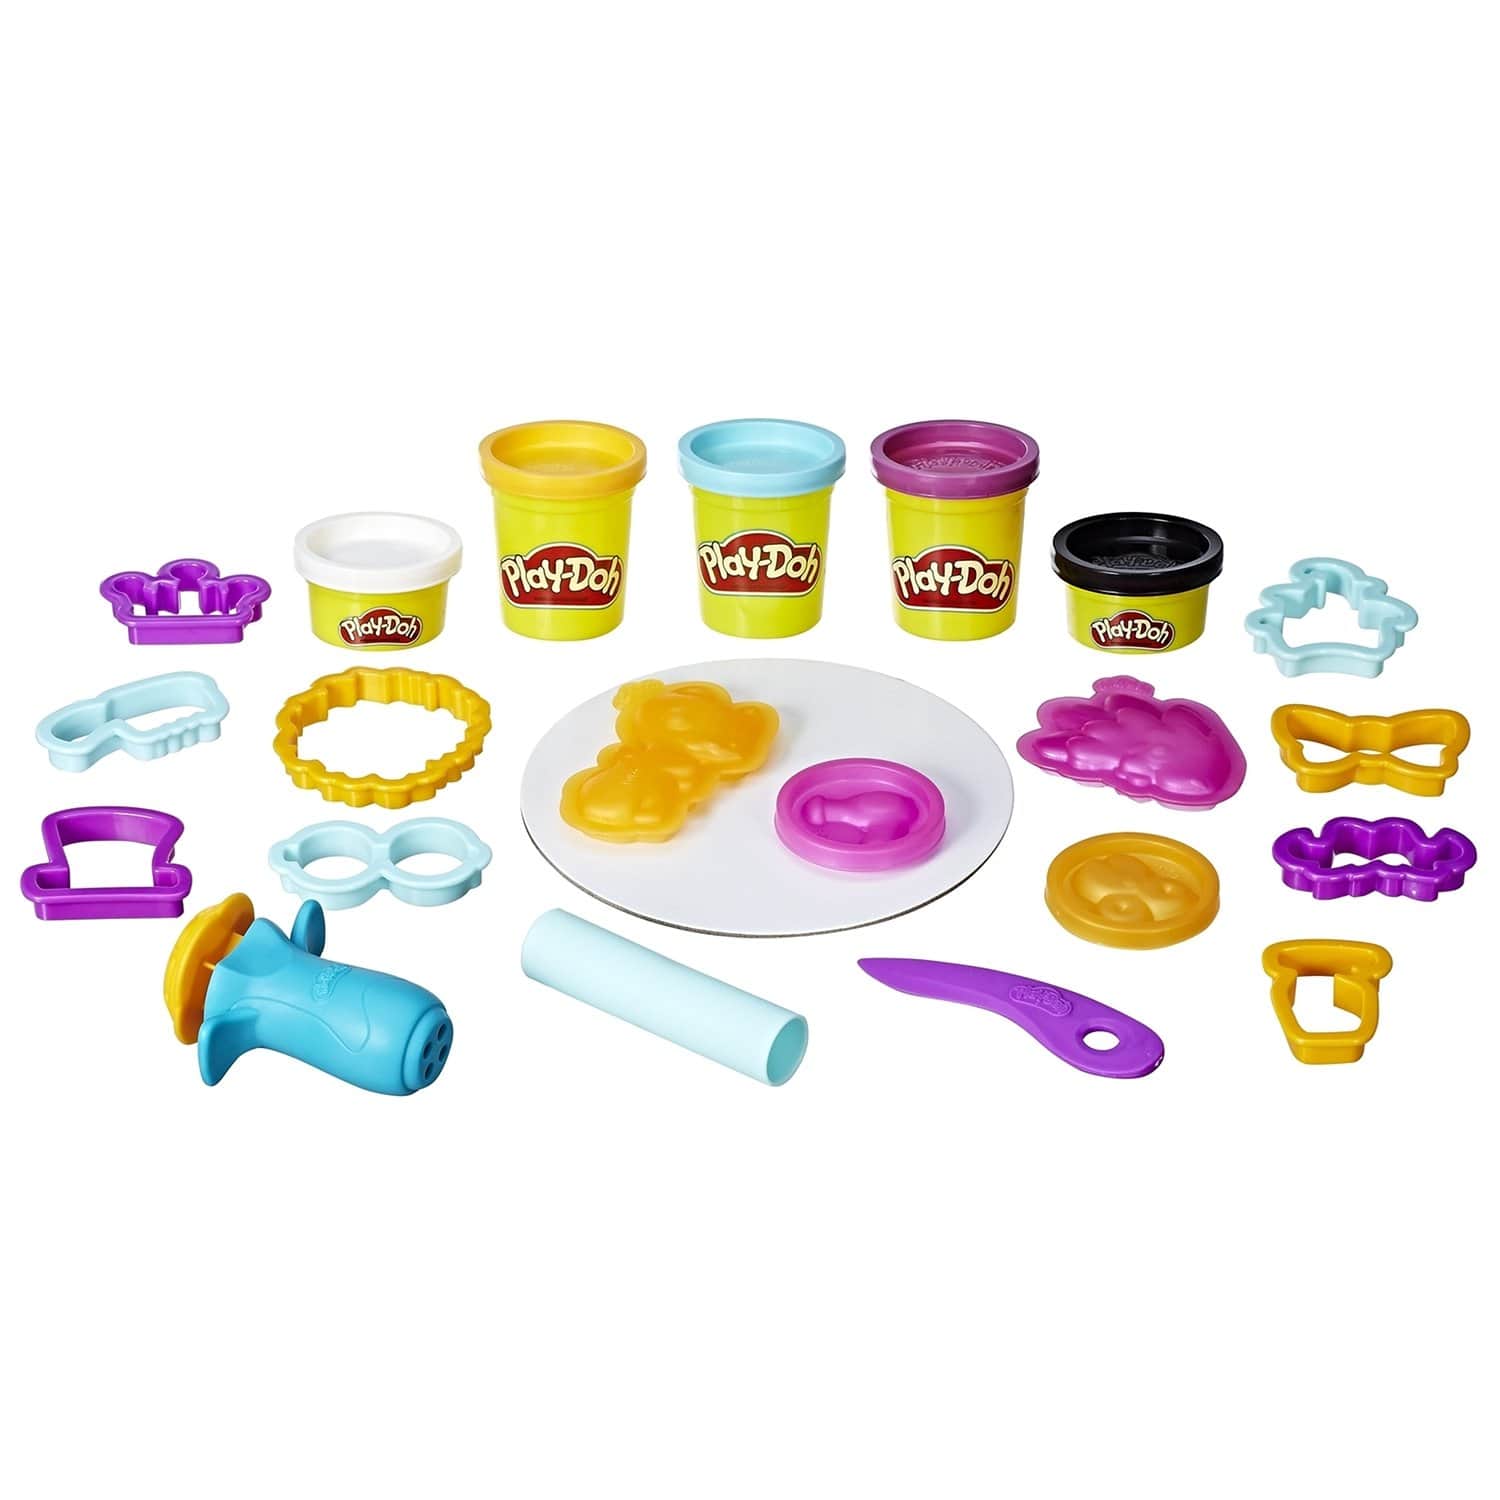 Купить наборы пластилина. Play Doh Touch. Playdo пластилин набор. Hasbro Play-Doh b0009 игровой набор "Создай любимую пони". ПЛЕЙДО лепка набор.